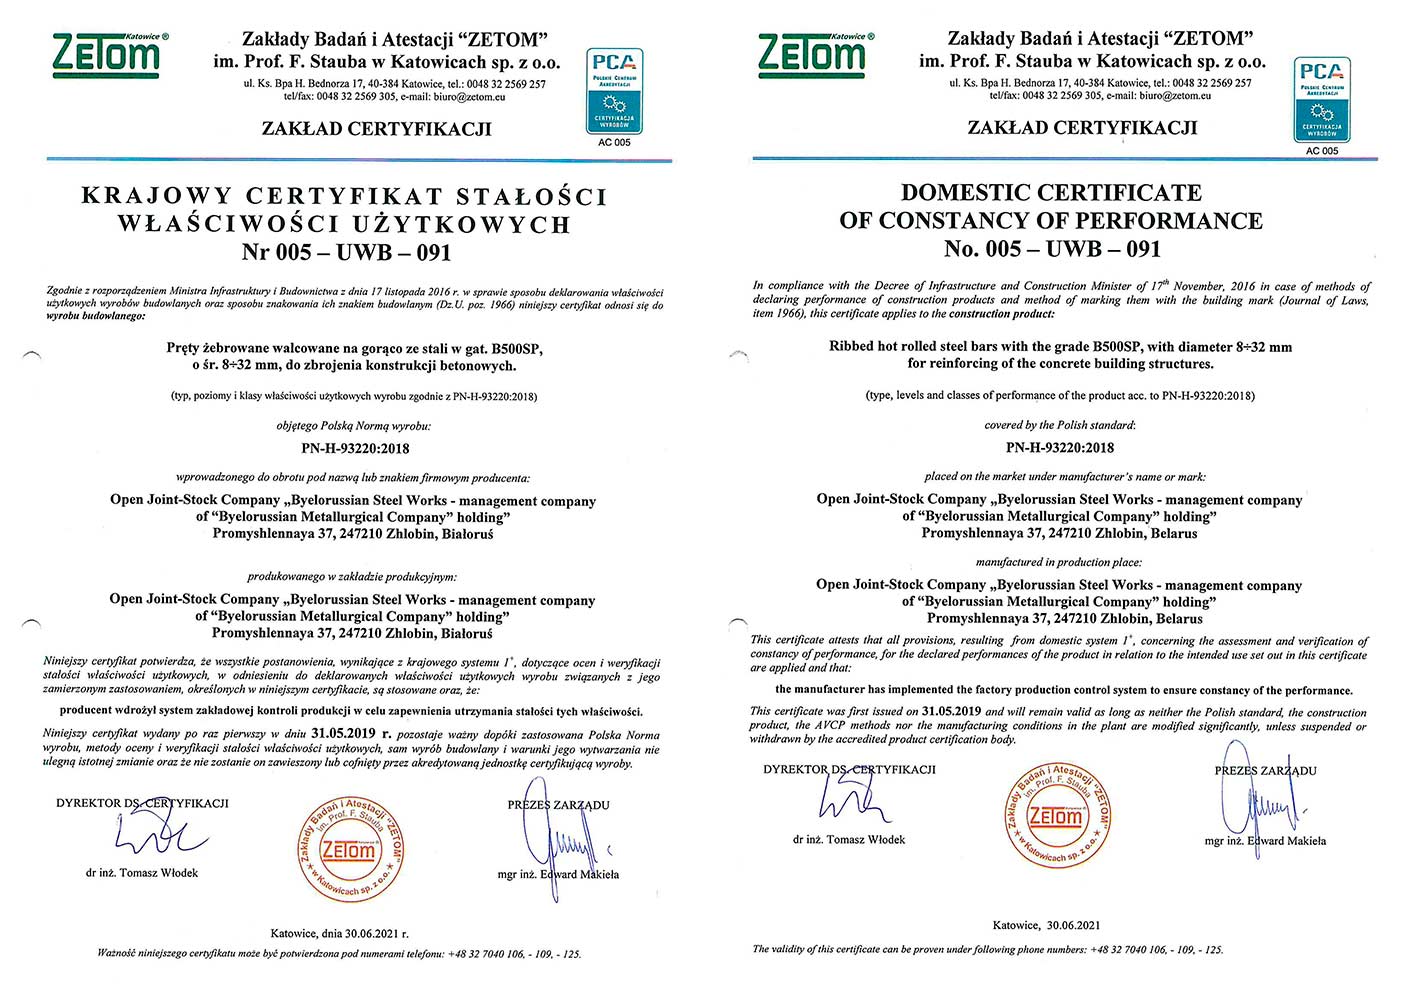 Сертификат № 005-UWB-091 (ZETOM, Польша) на производство арматурного проката марки В500SP в прутках Ø  8- 32 мм для армирования бетонных строительных конструкций в соответствии с PN-H-93220:2018